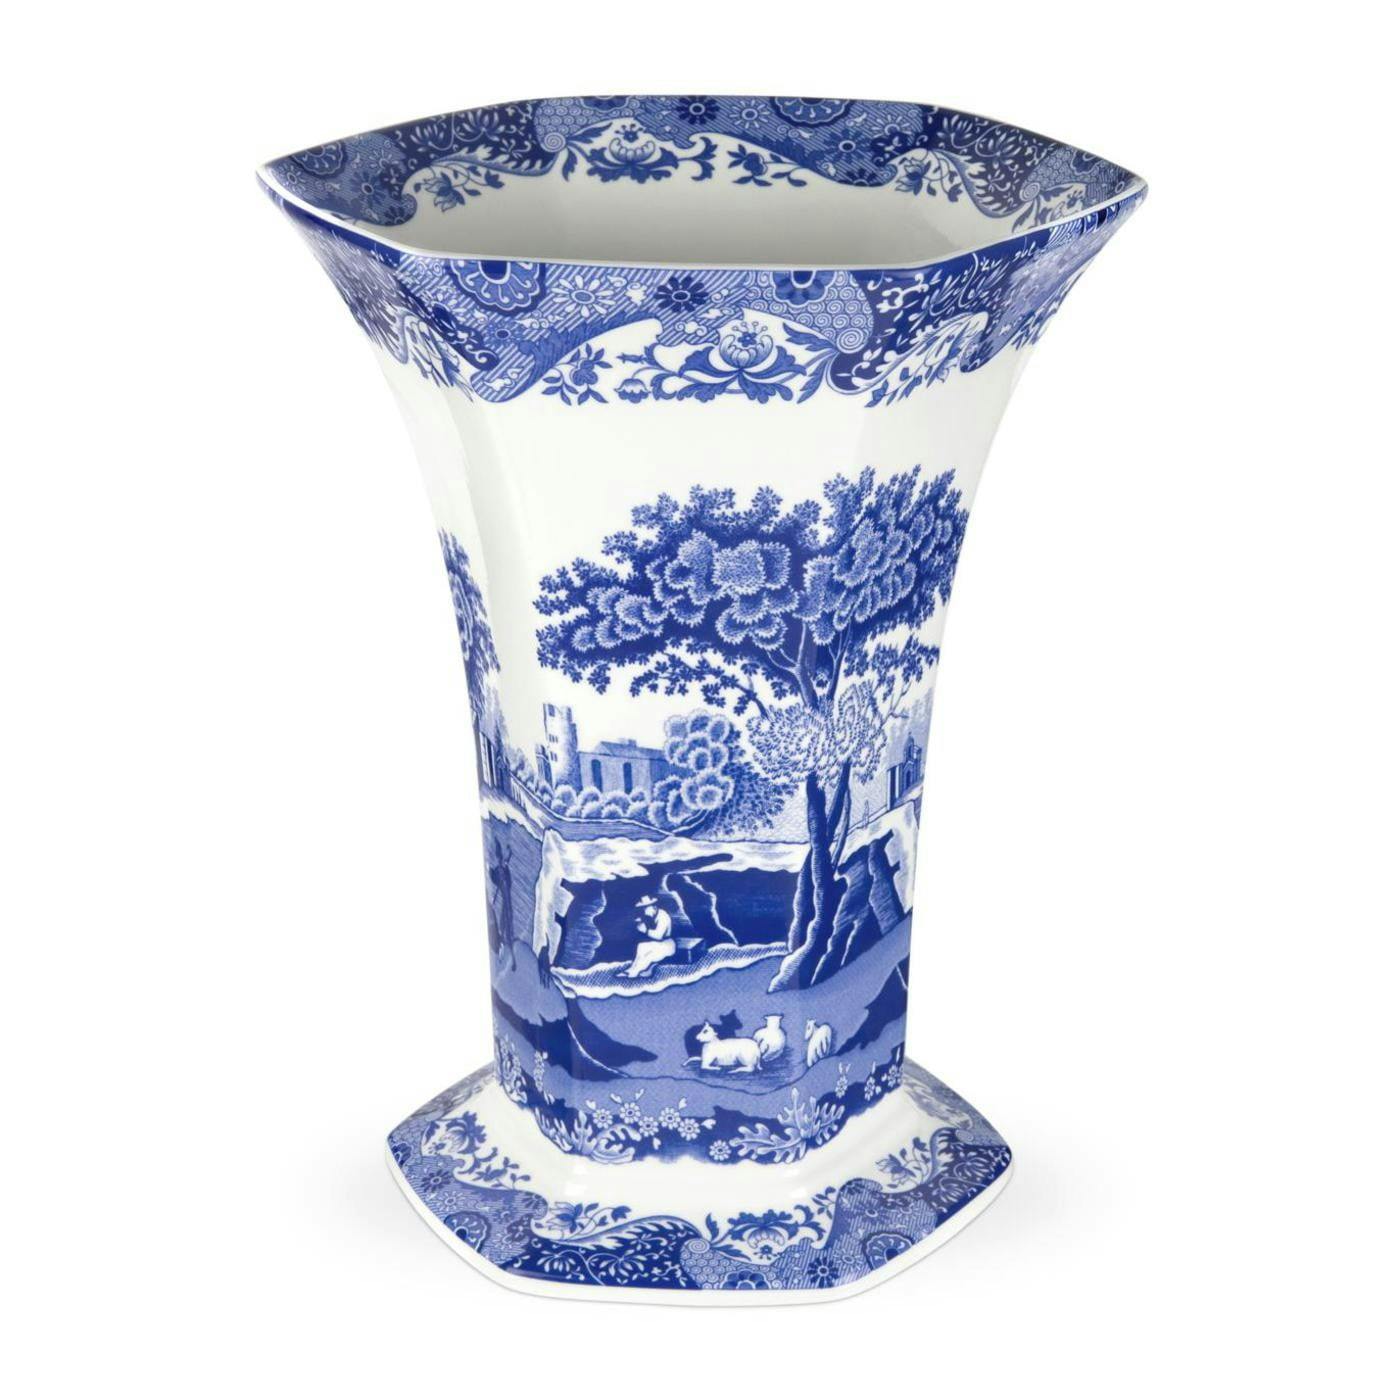 Hexagonal Blue Italian Porcelain Table Vase, 10" Geometric Design